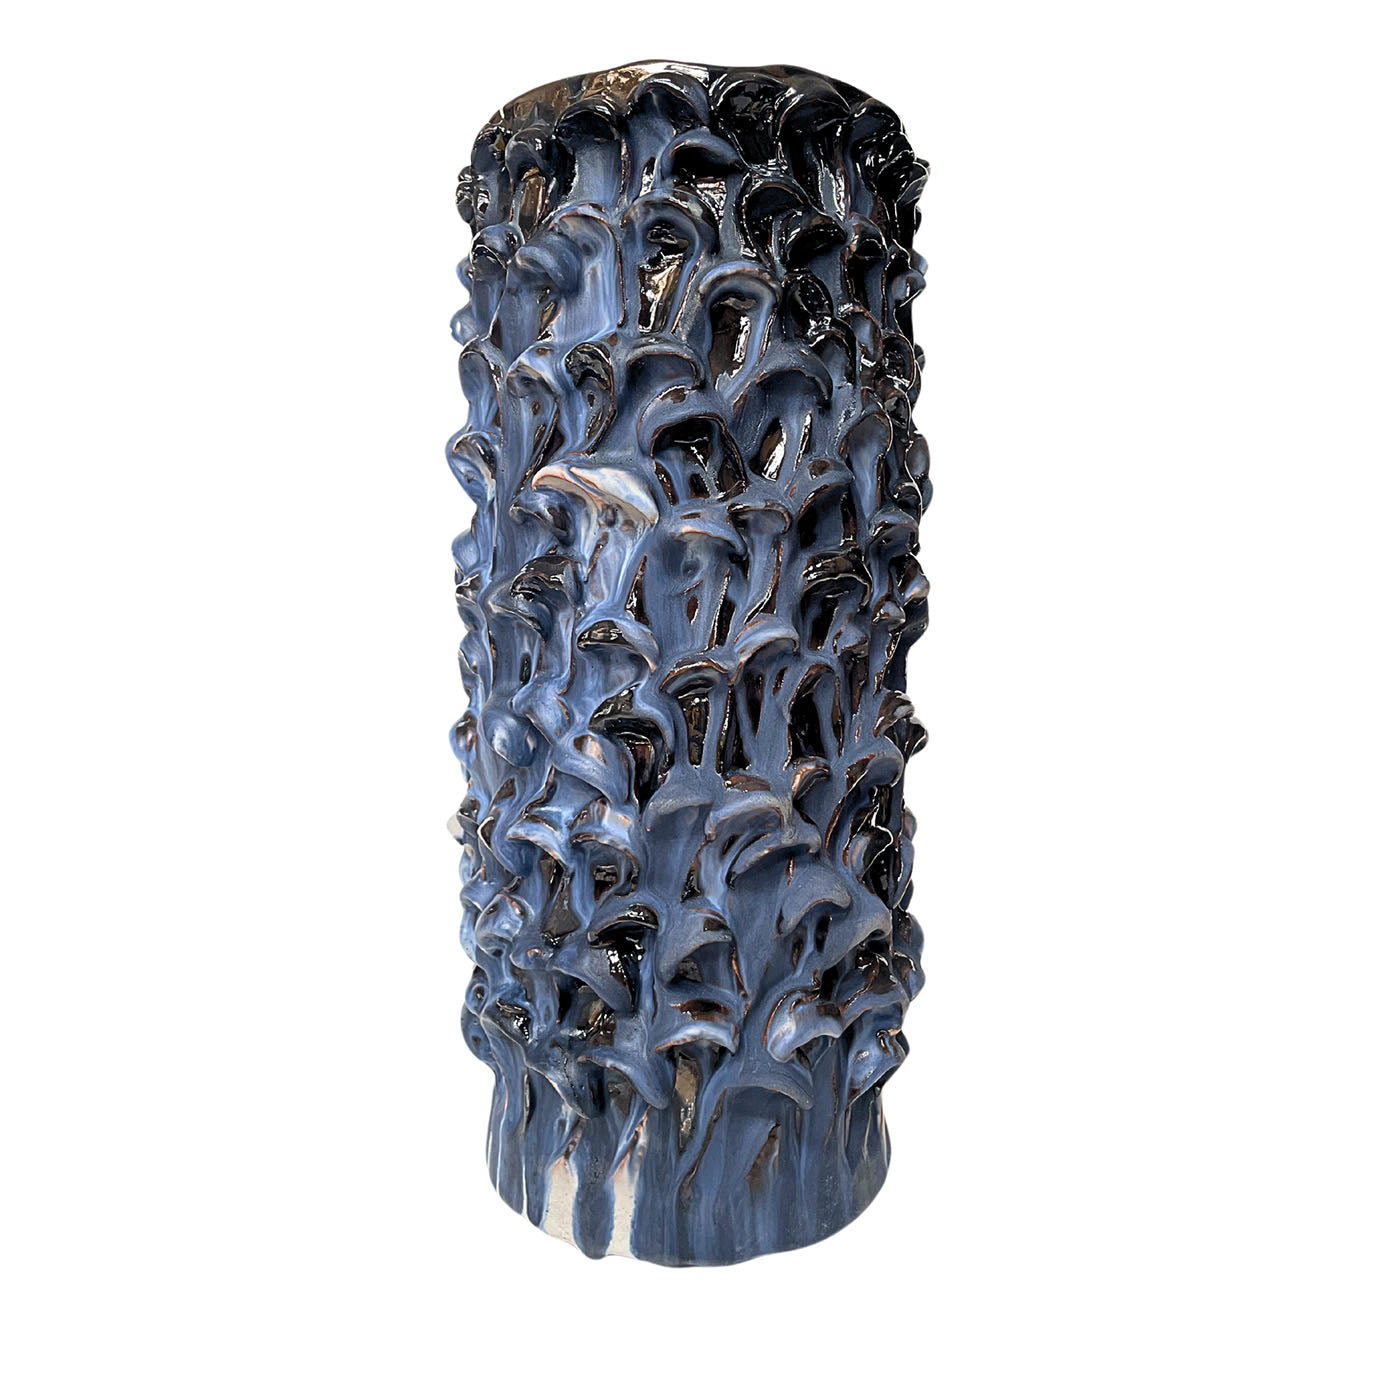 Vase cylindrique bleu et noir - Vue principale